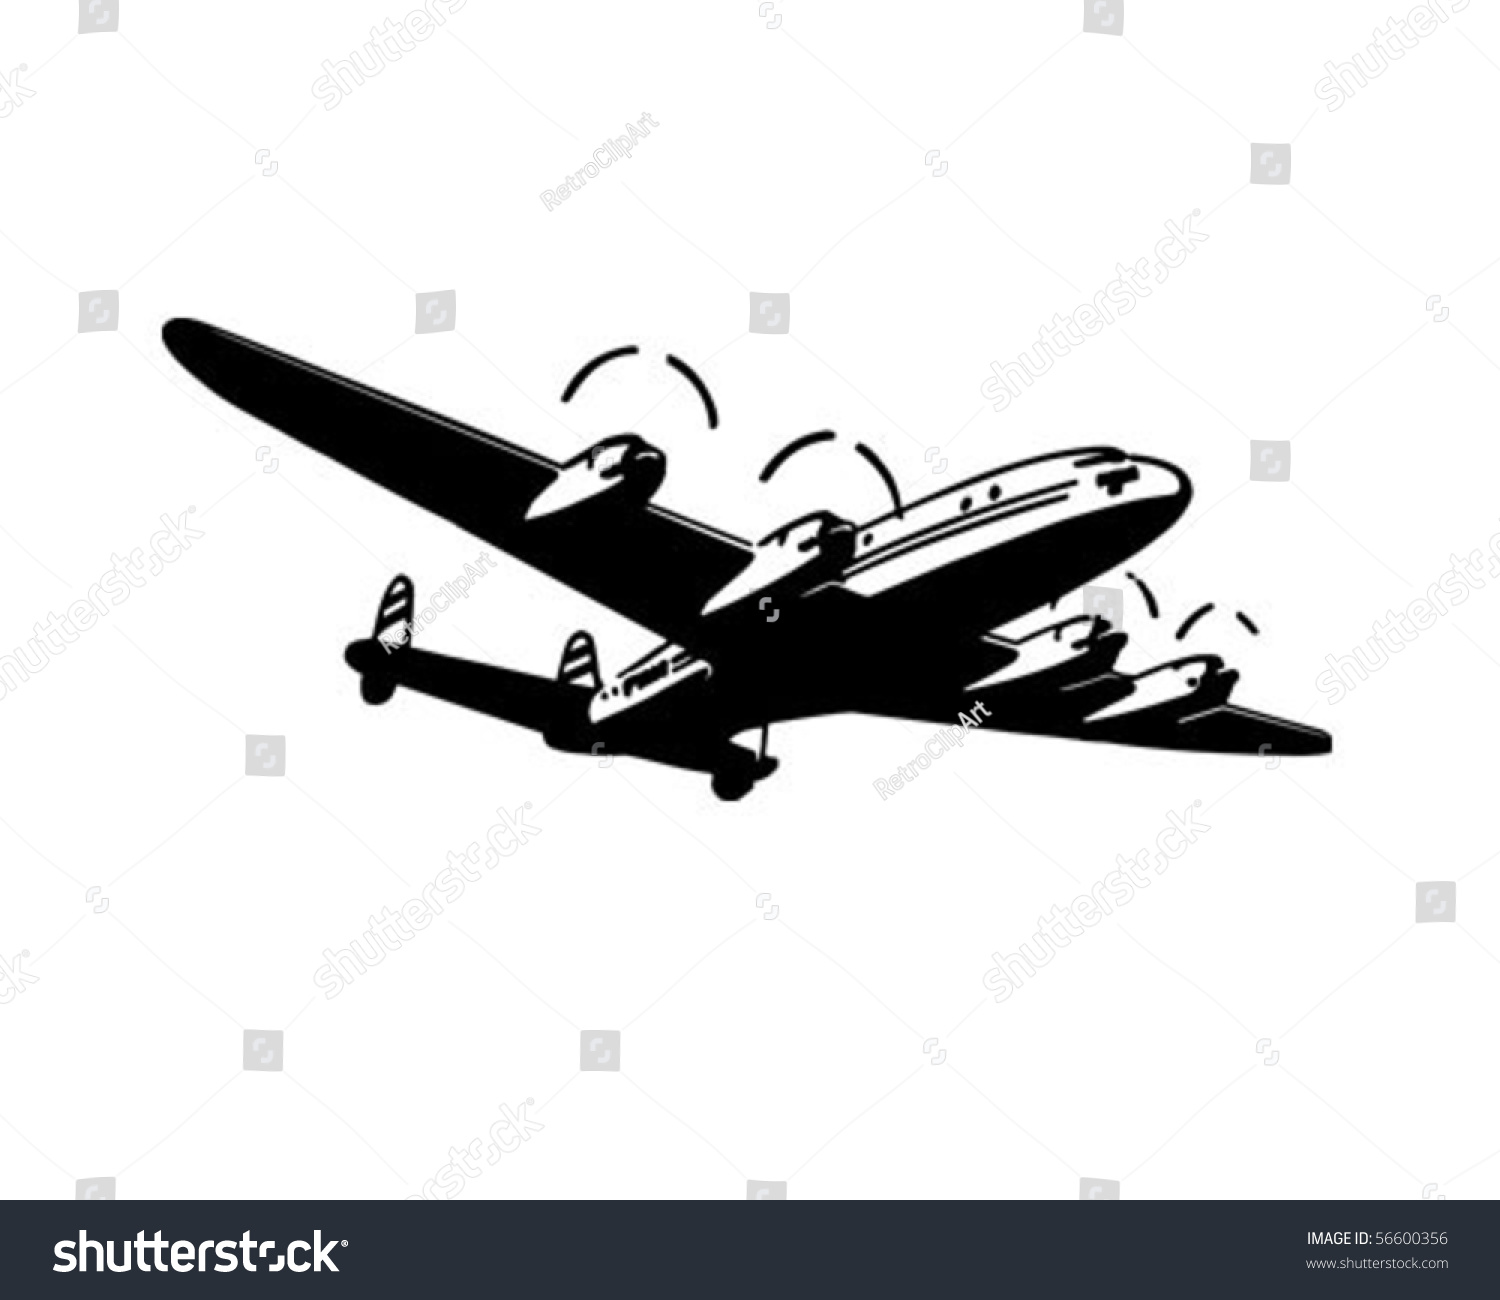 clipart passenger plane - photo #40